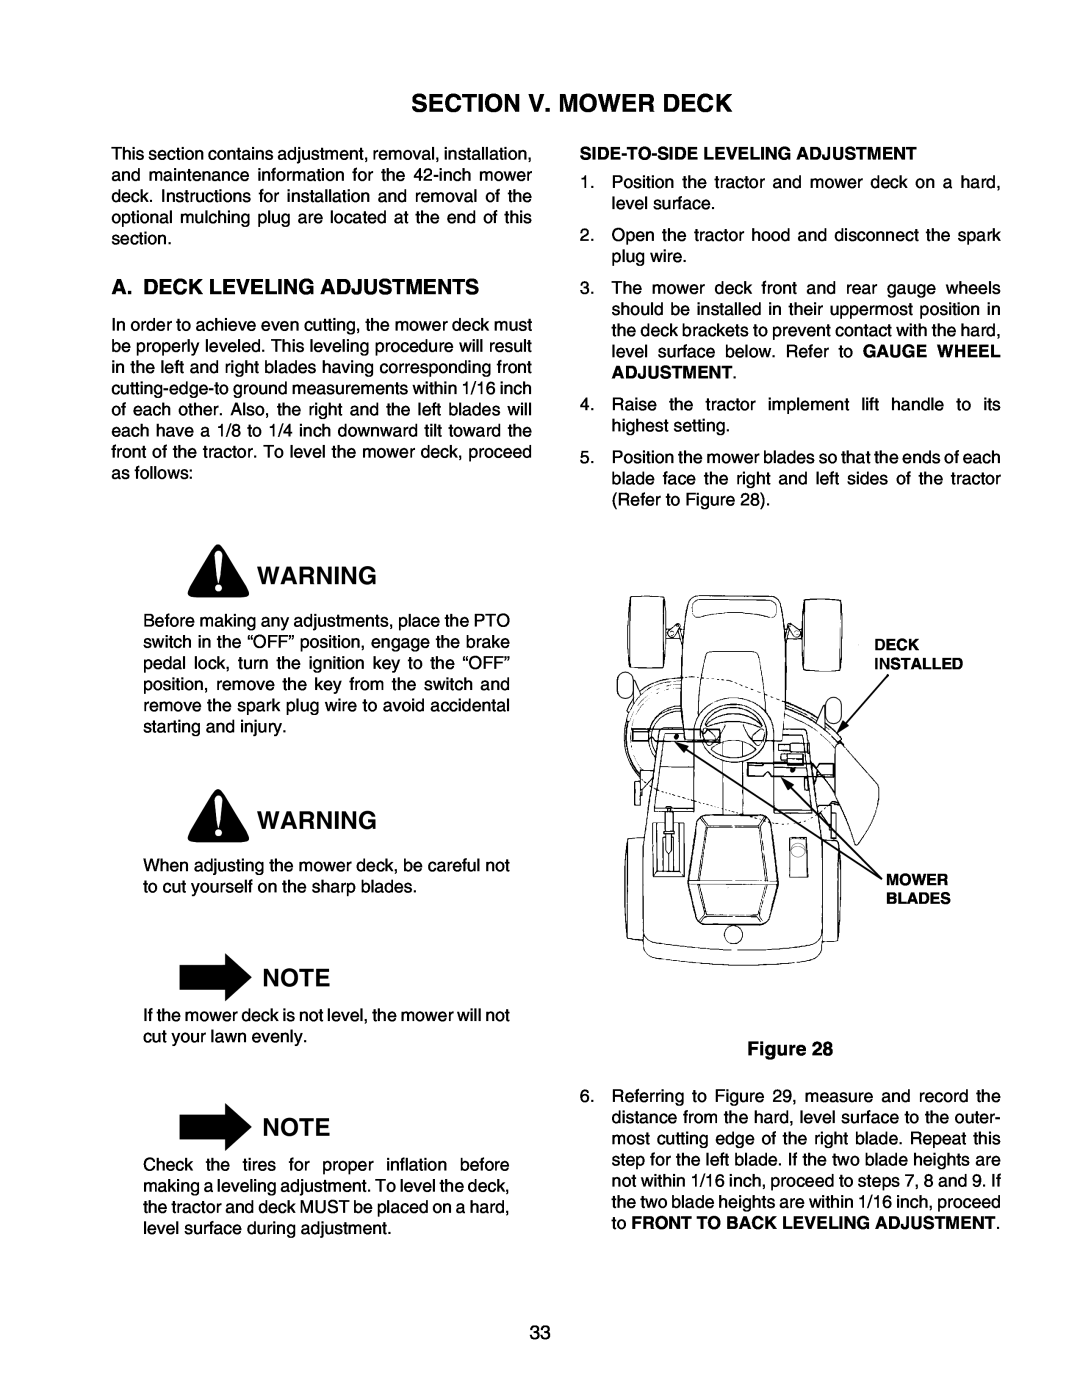 Cub Cadet 2176 manual Section V. Mower Deck, A. Deck Leveling Adjustments, Side-To-Side Leveling Adjustment 